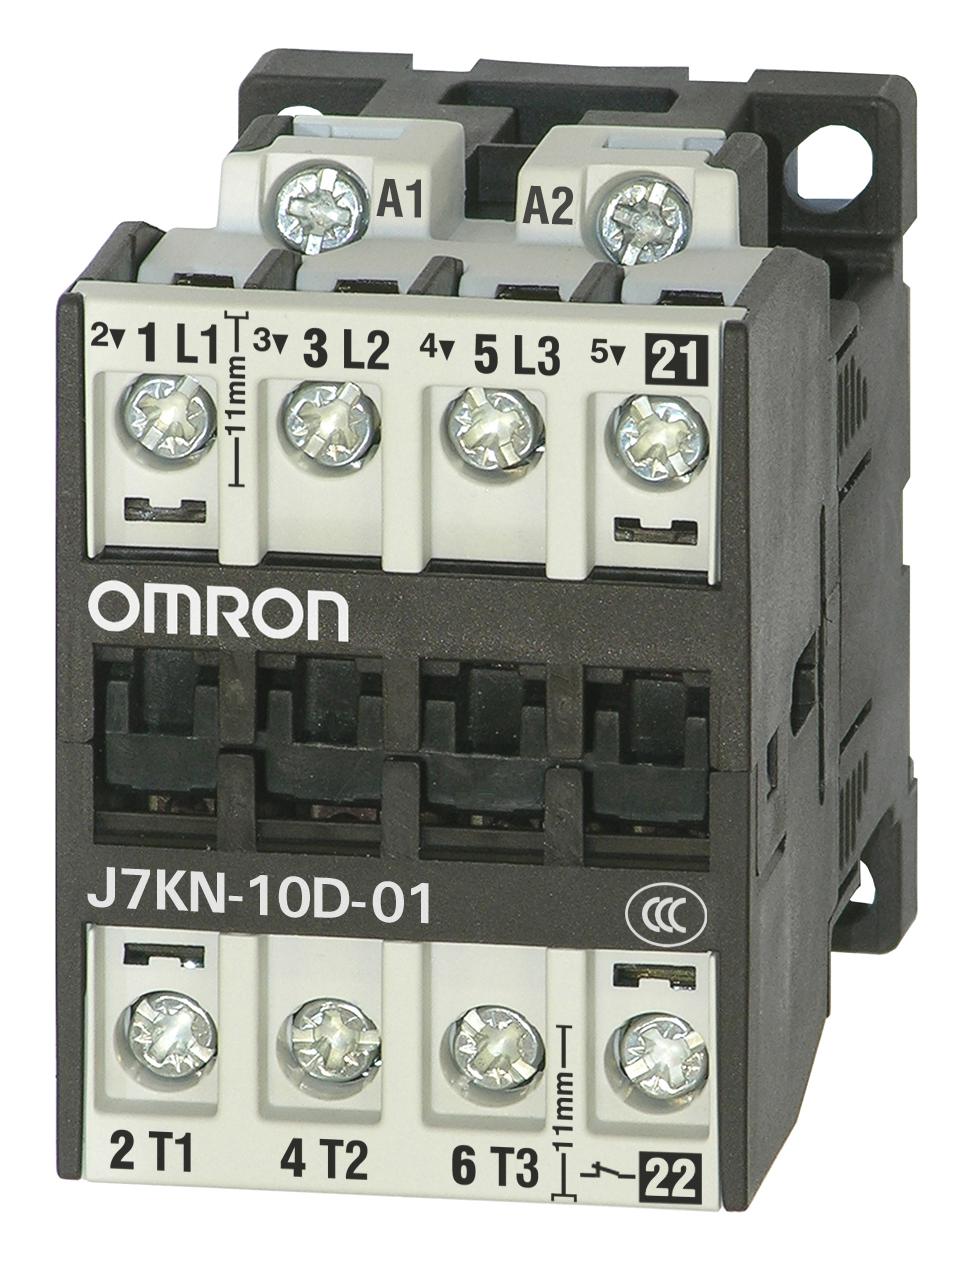 J7KN-10D-01 230 CONTACTORS RELAYS OMRON